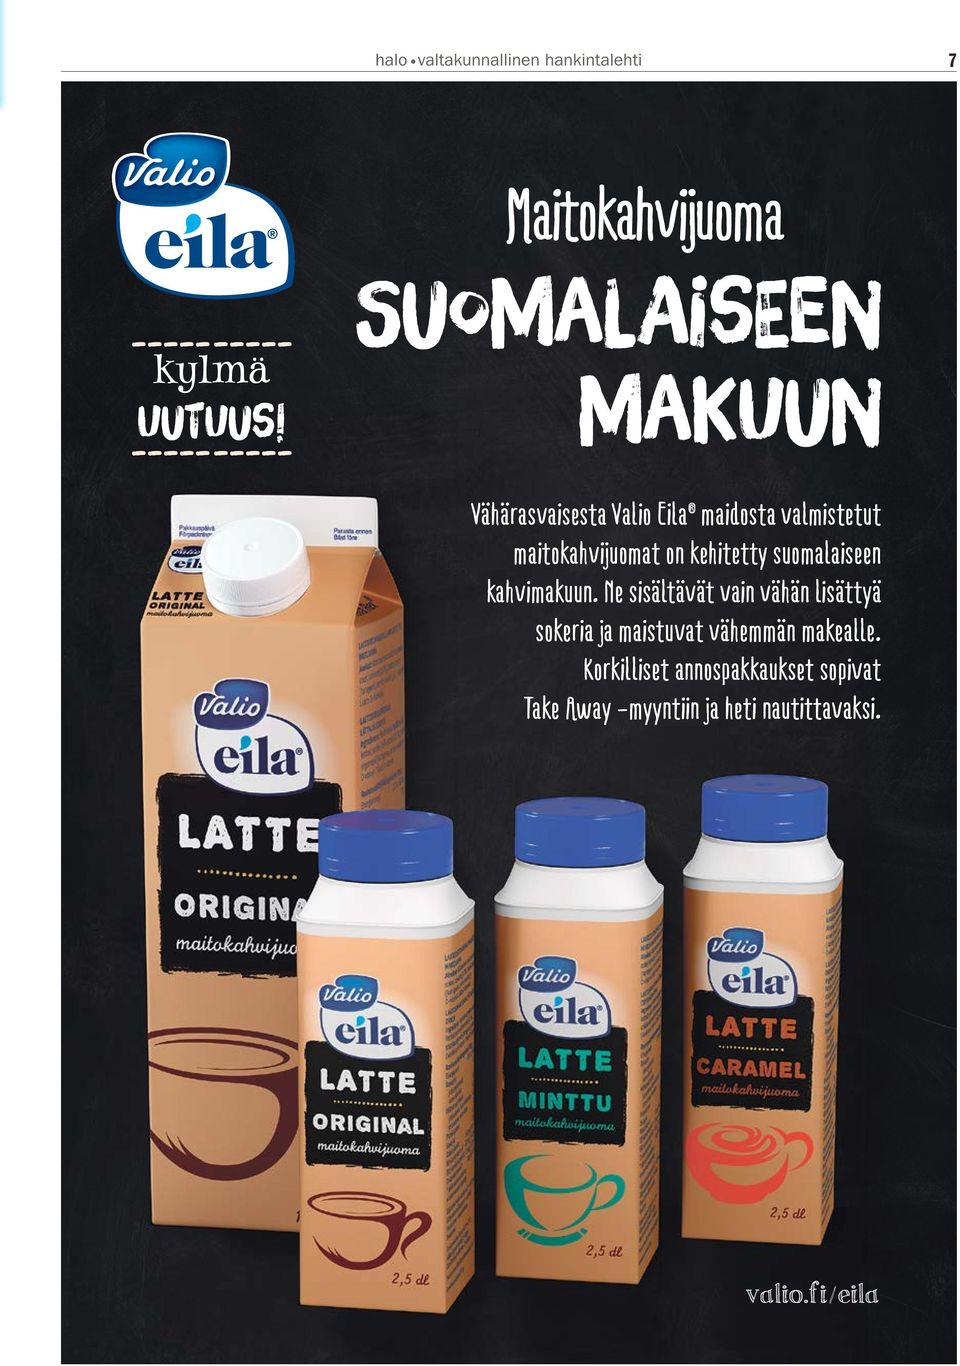 kehitetty suomalaiseen kahvimakuun.